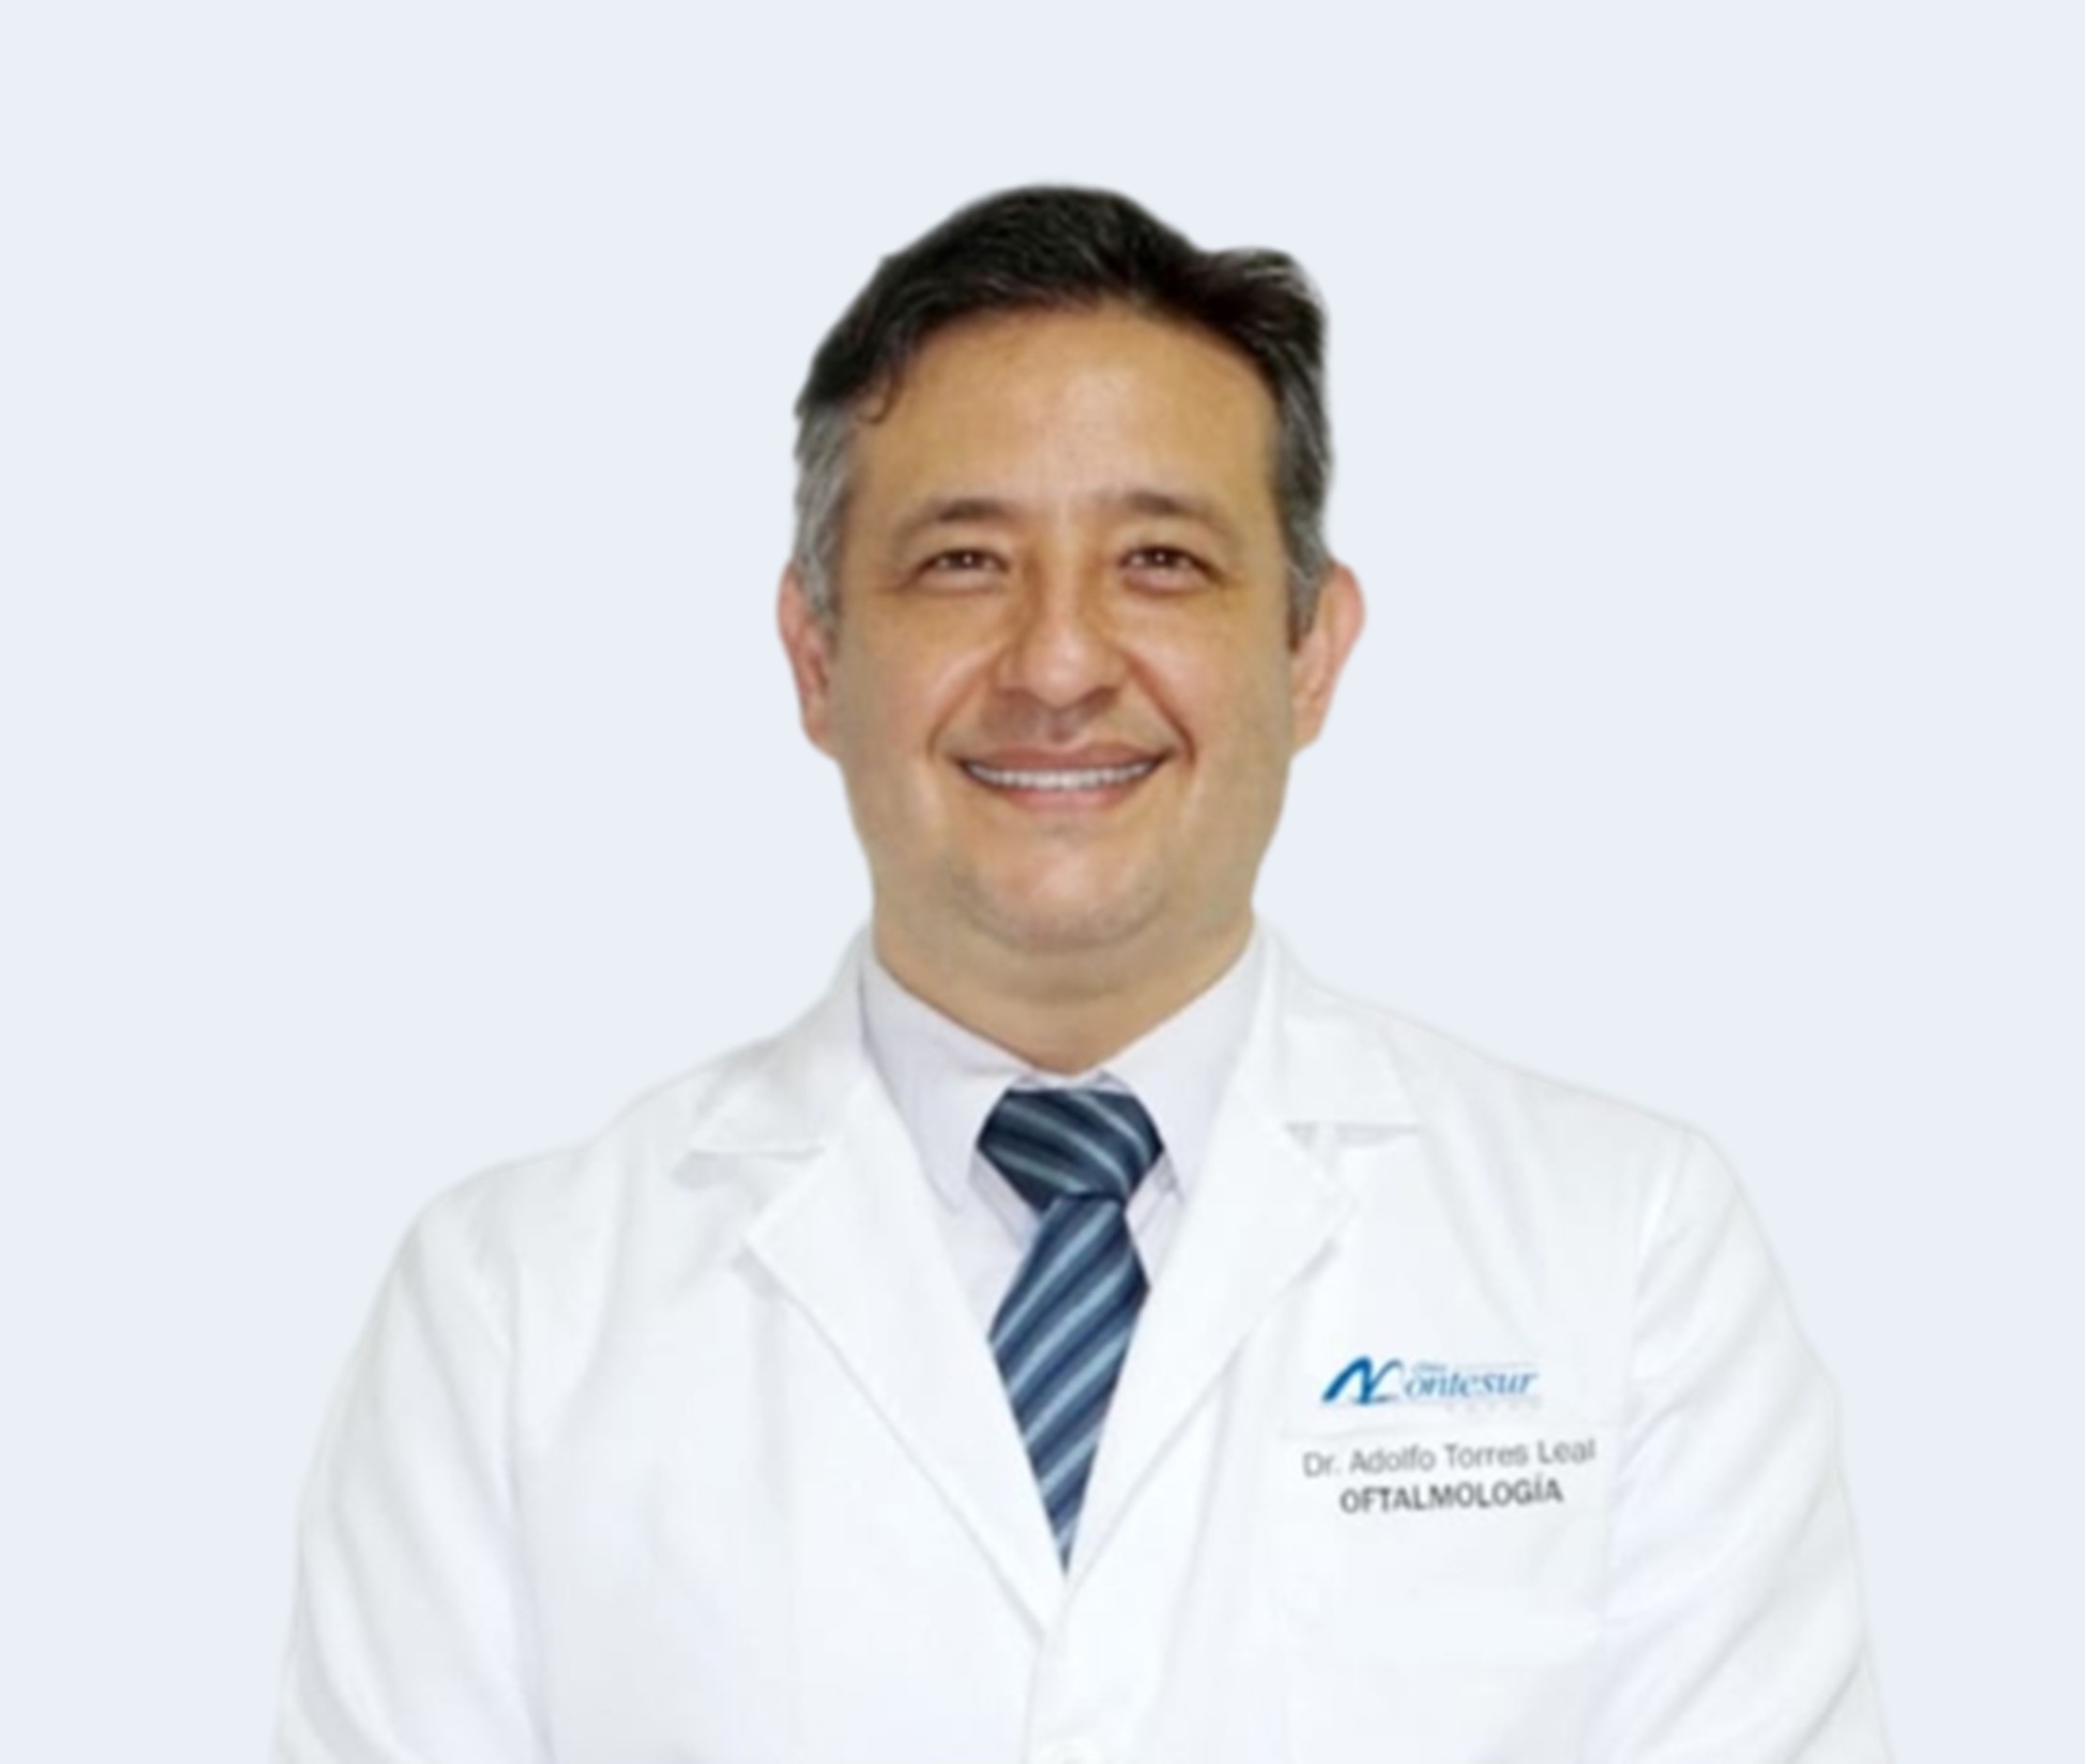 Dr. Adolfo Torres Leal Oftalmologo Oftalmólogo oftalmología Cirujano de Cataratas